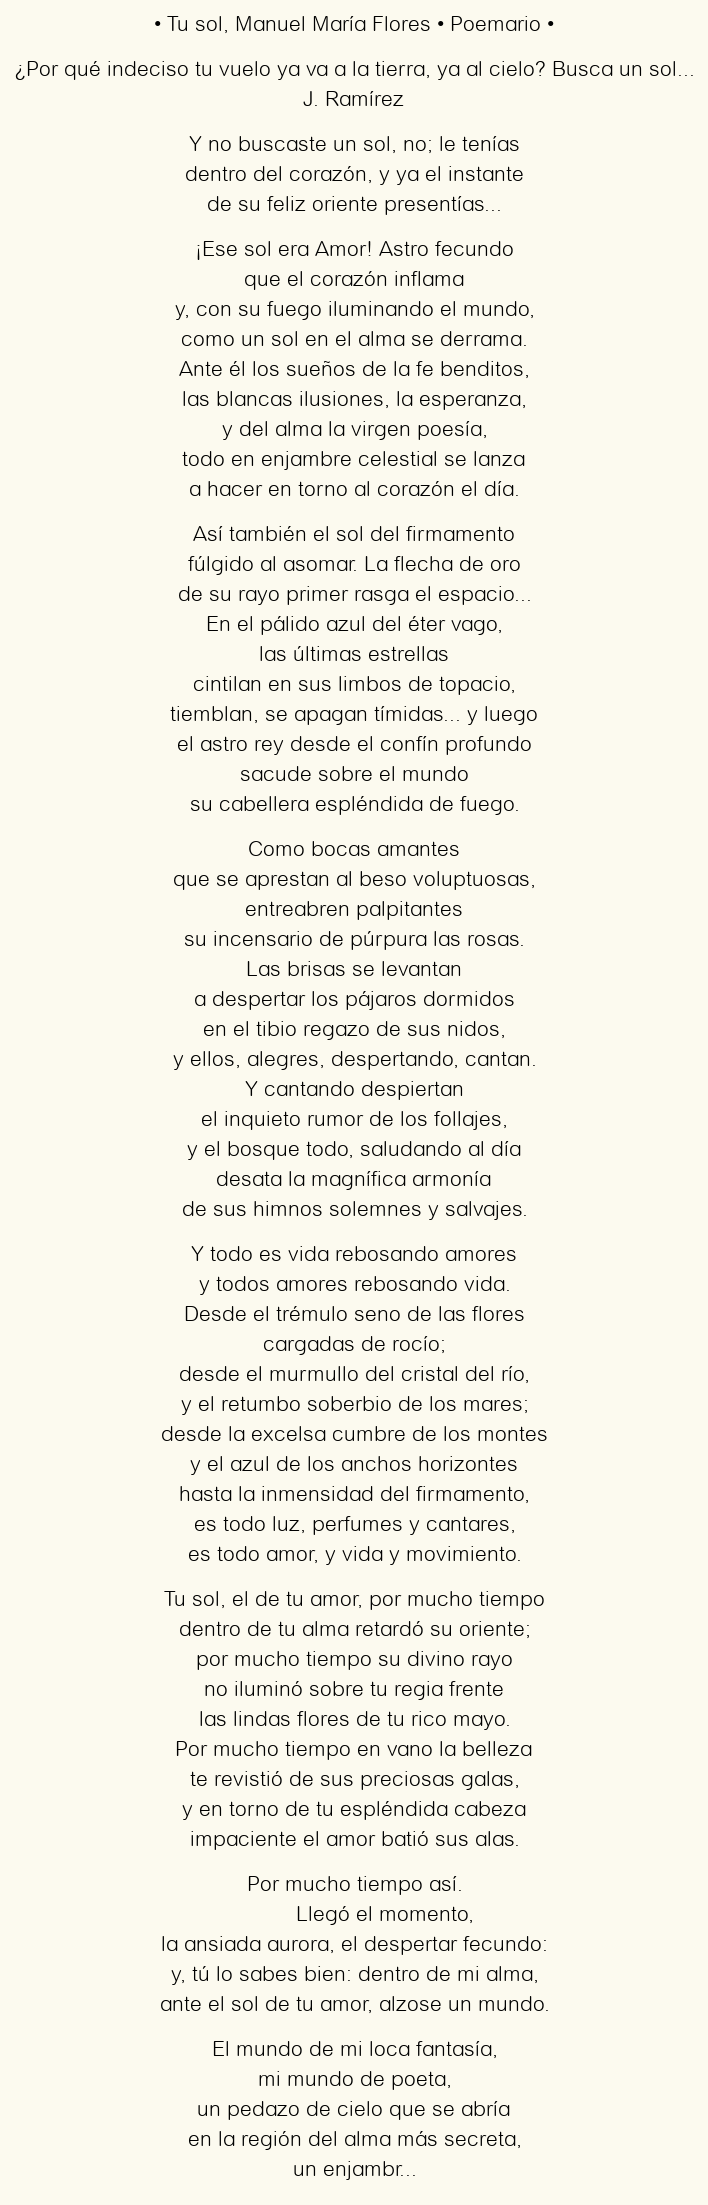 Imagen con el poema Tu sol, por Manuel María Flores